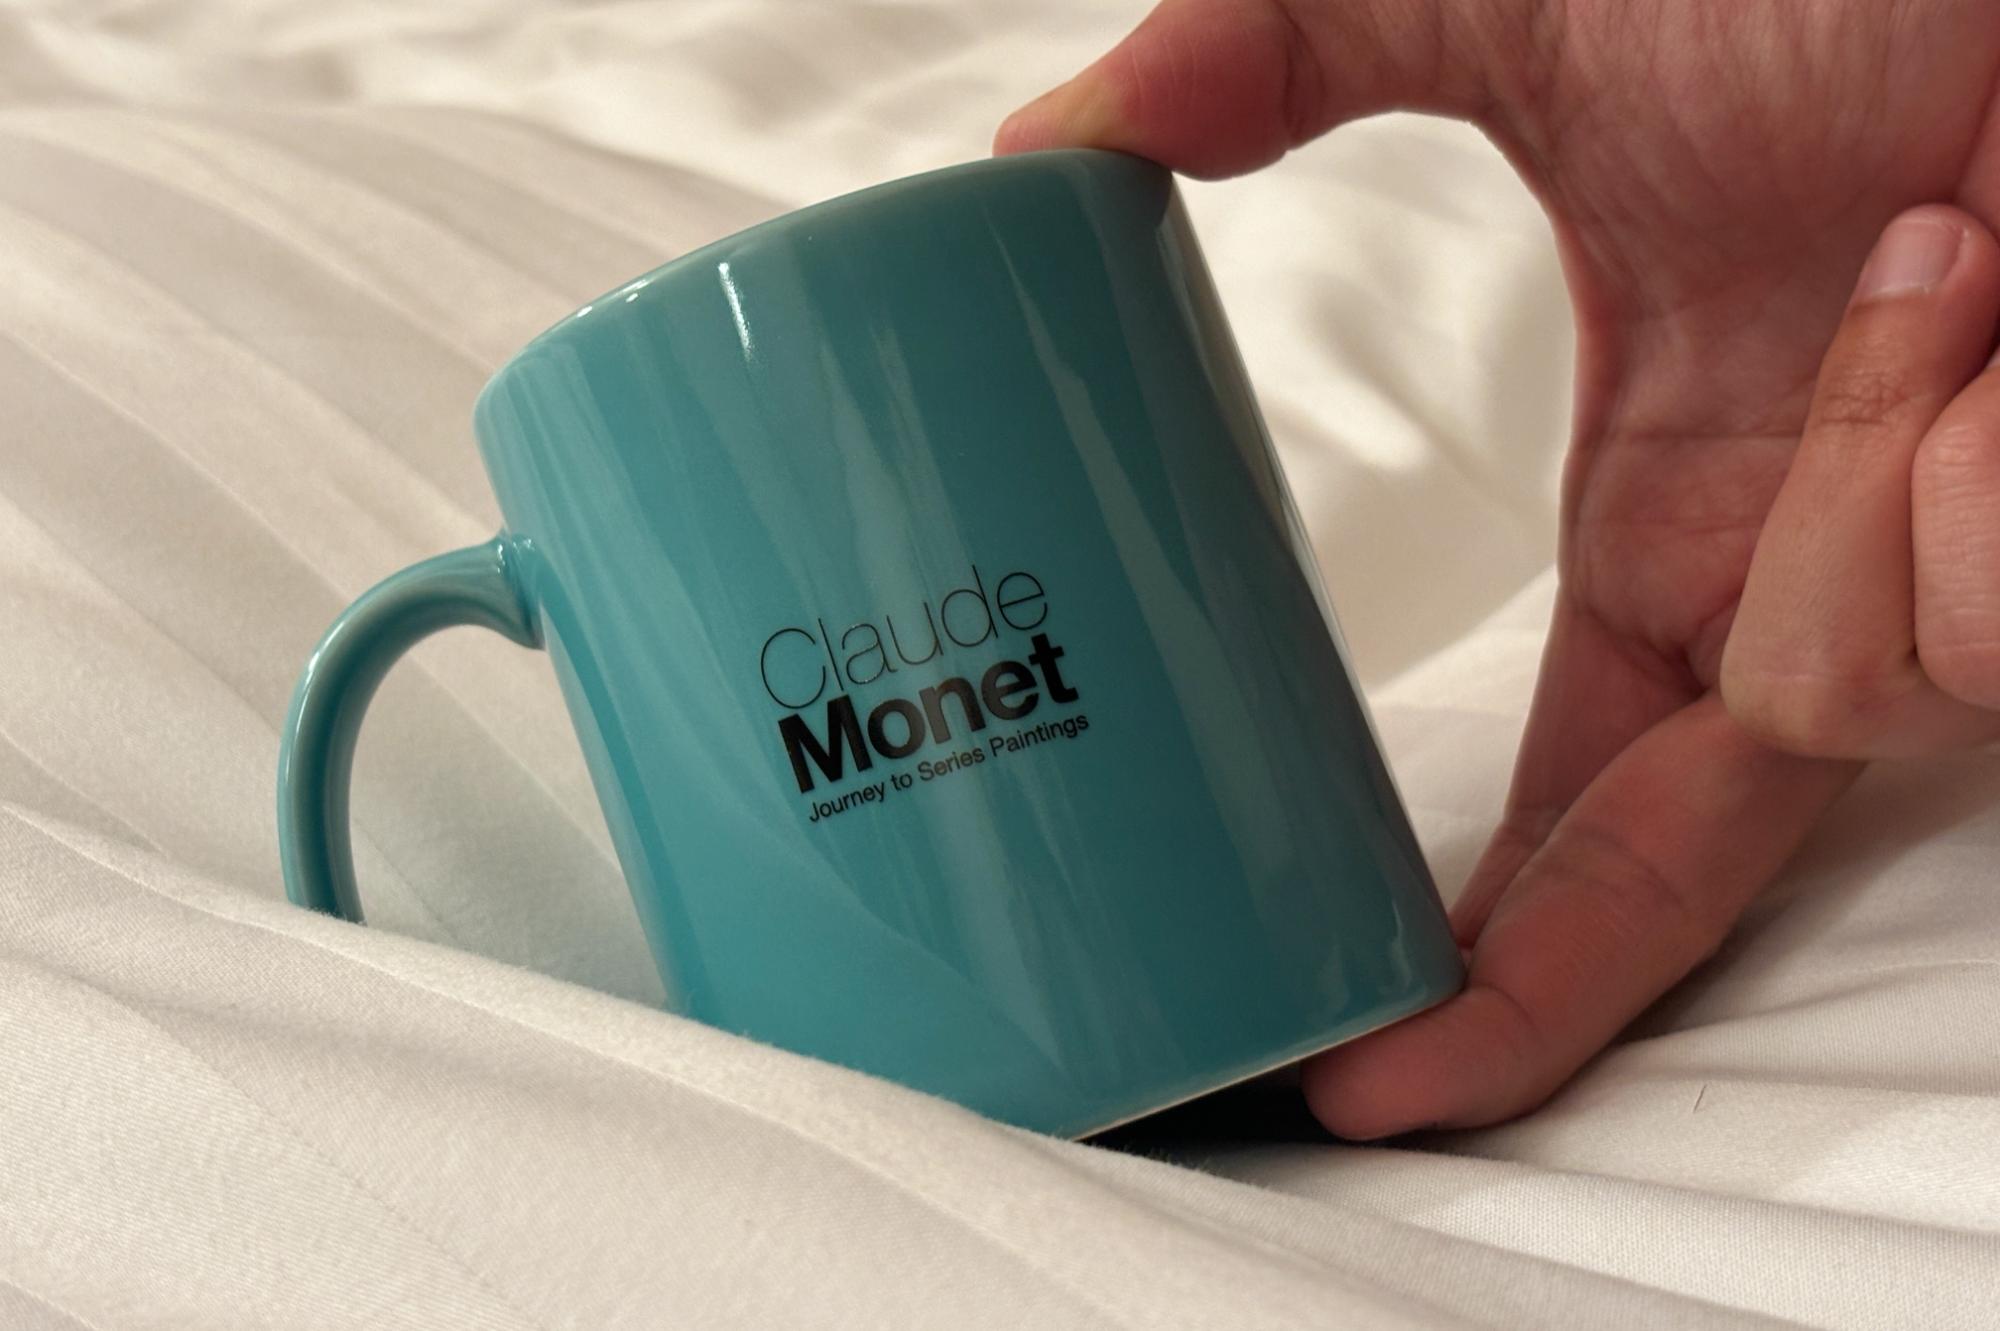 モネの睡蓮をモチーフにした「PEANUTS meets MONET」のマグカップ